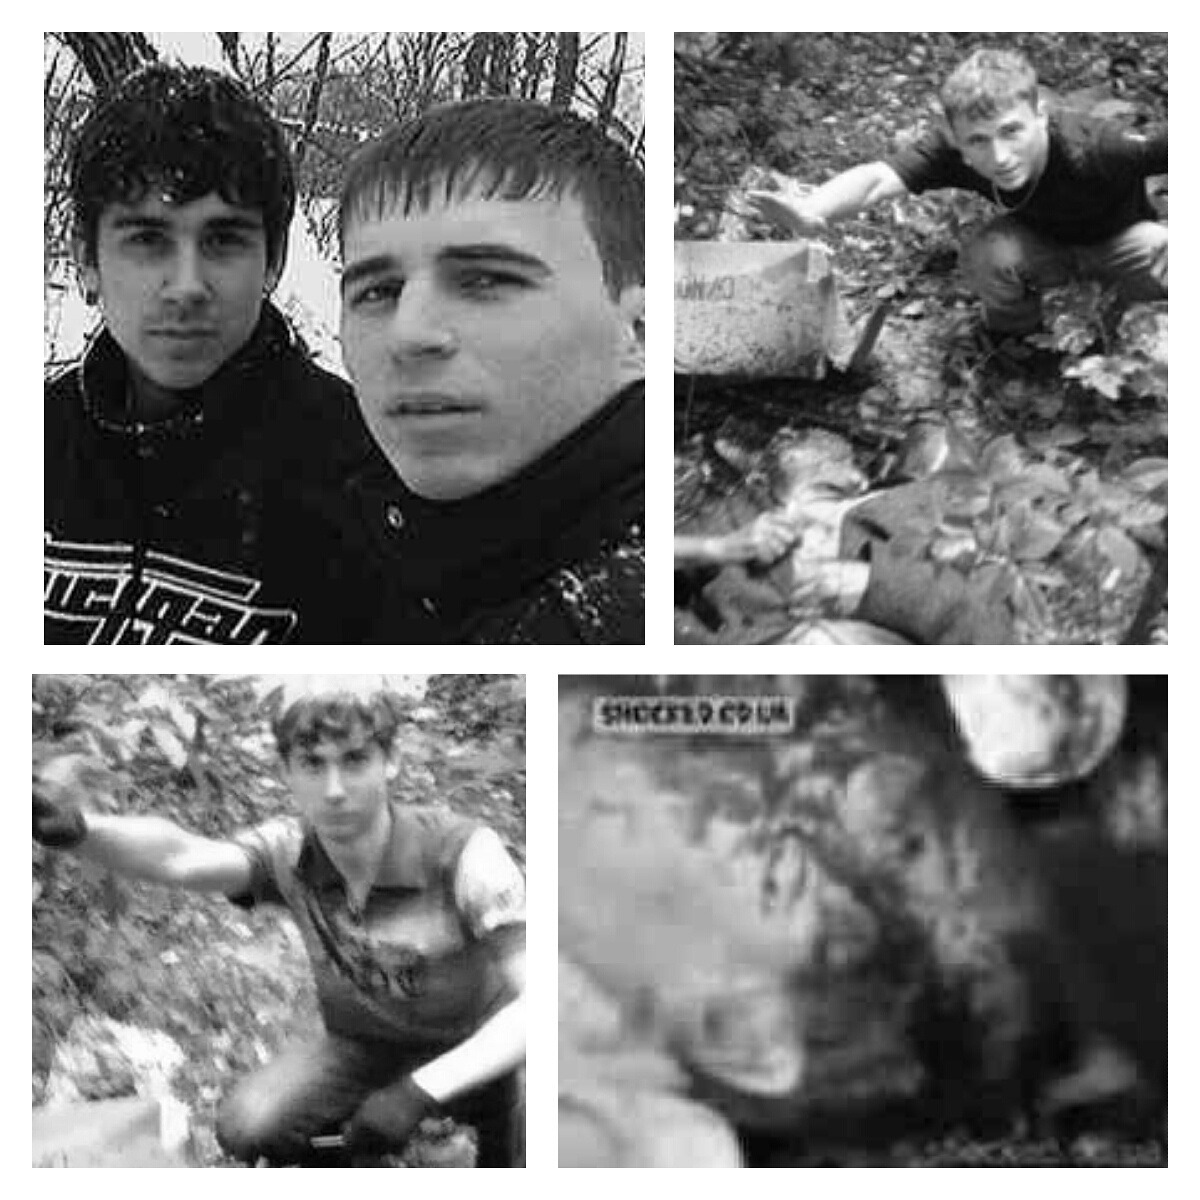 Entdecken Sie die abscheulichen Mörder: die Dnepropetrovsk M